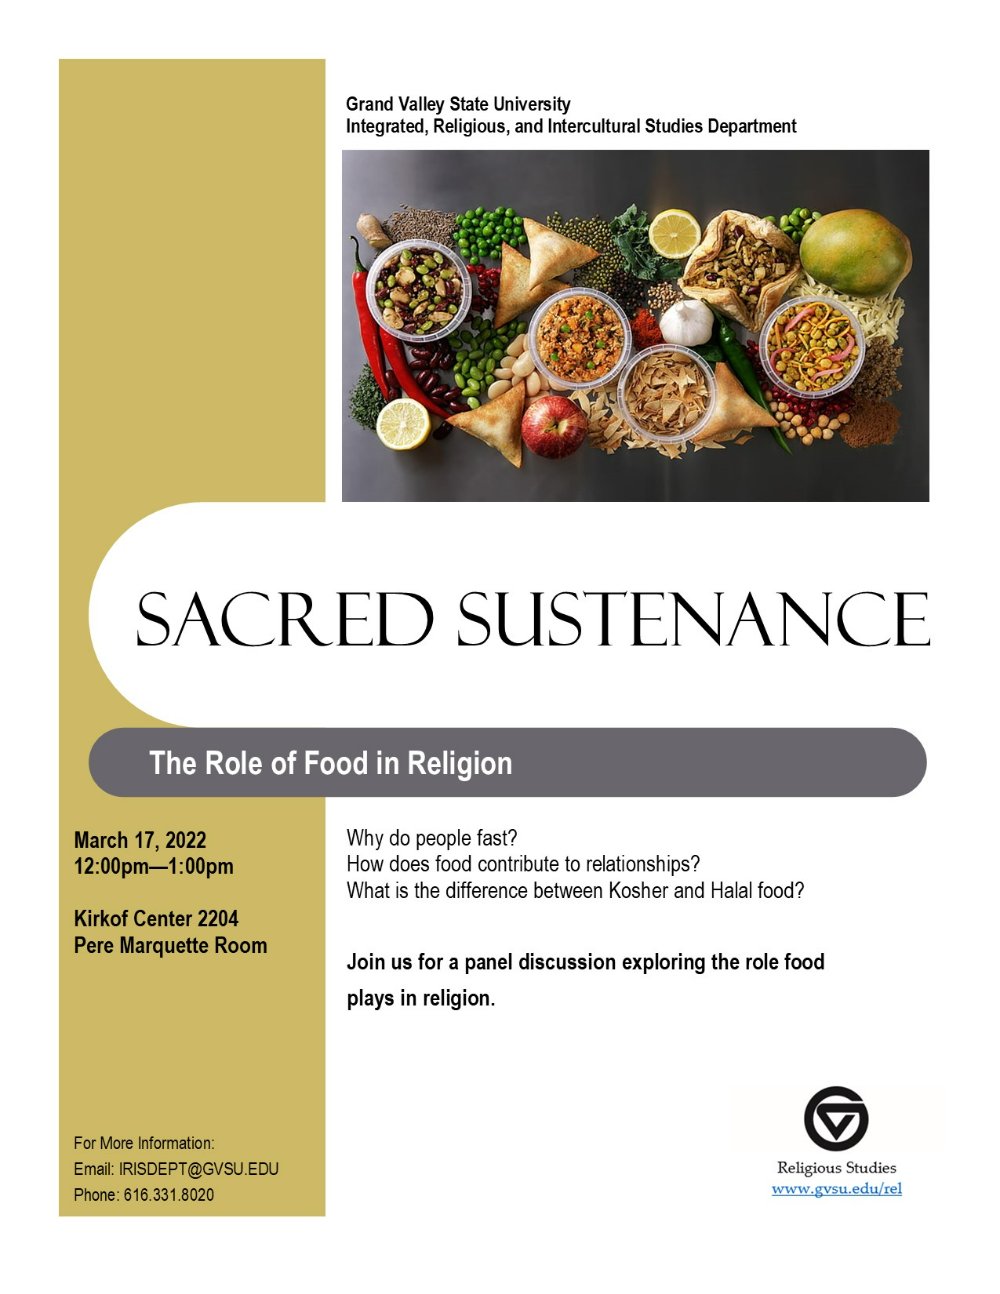 Sacred Sustenance Flyer